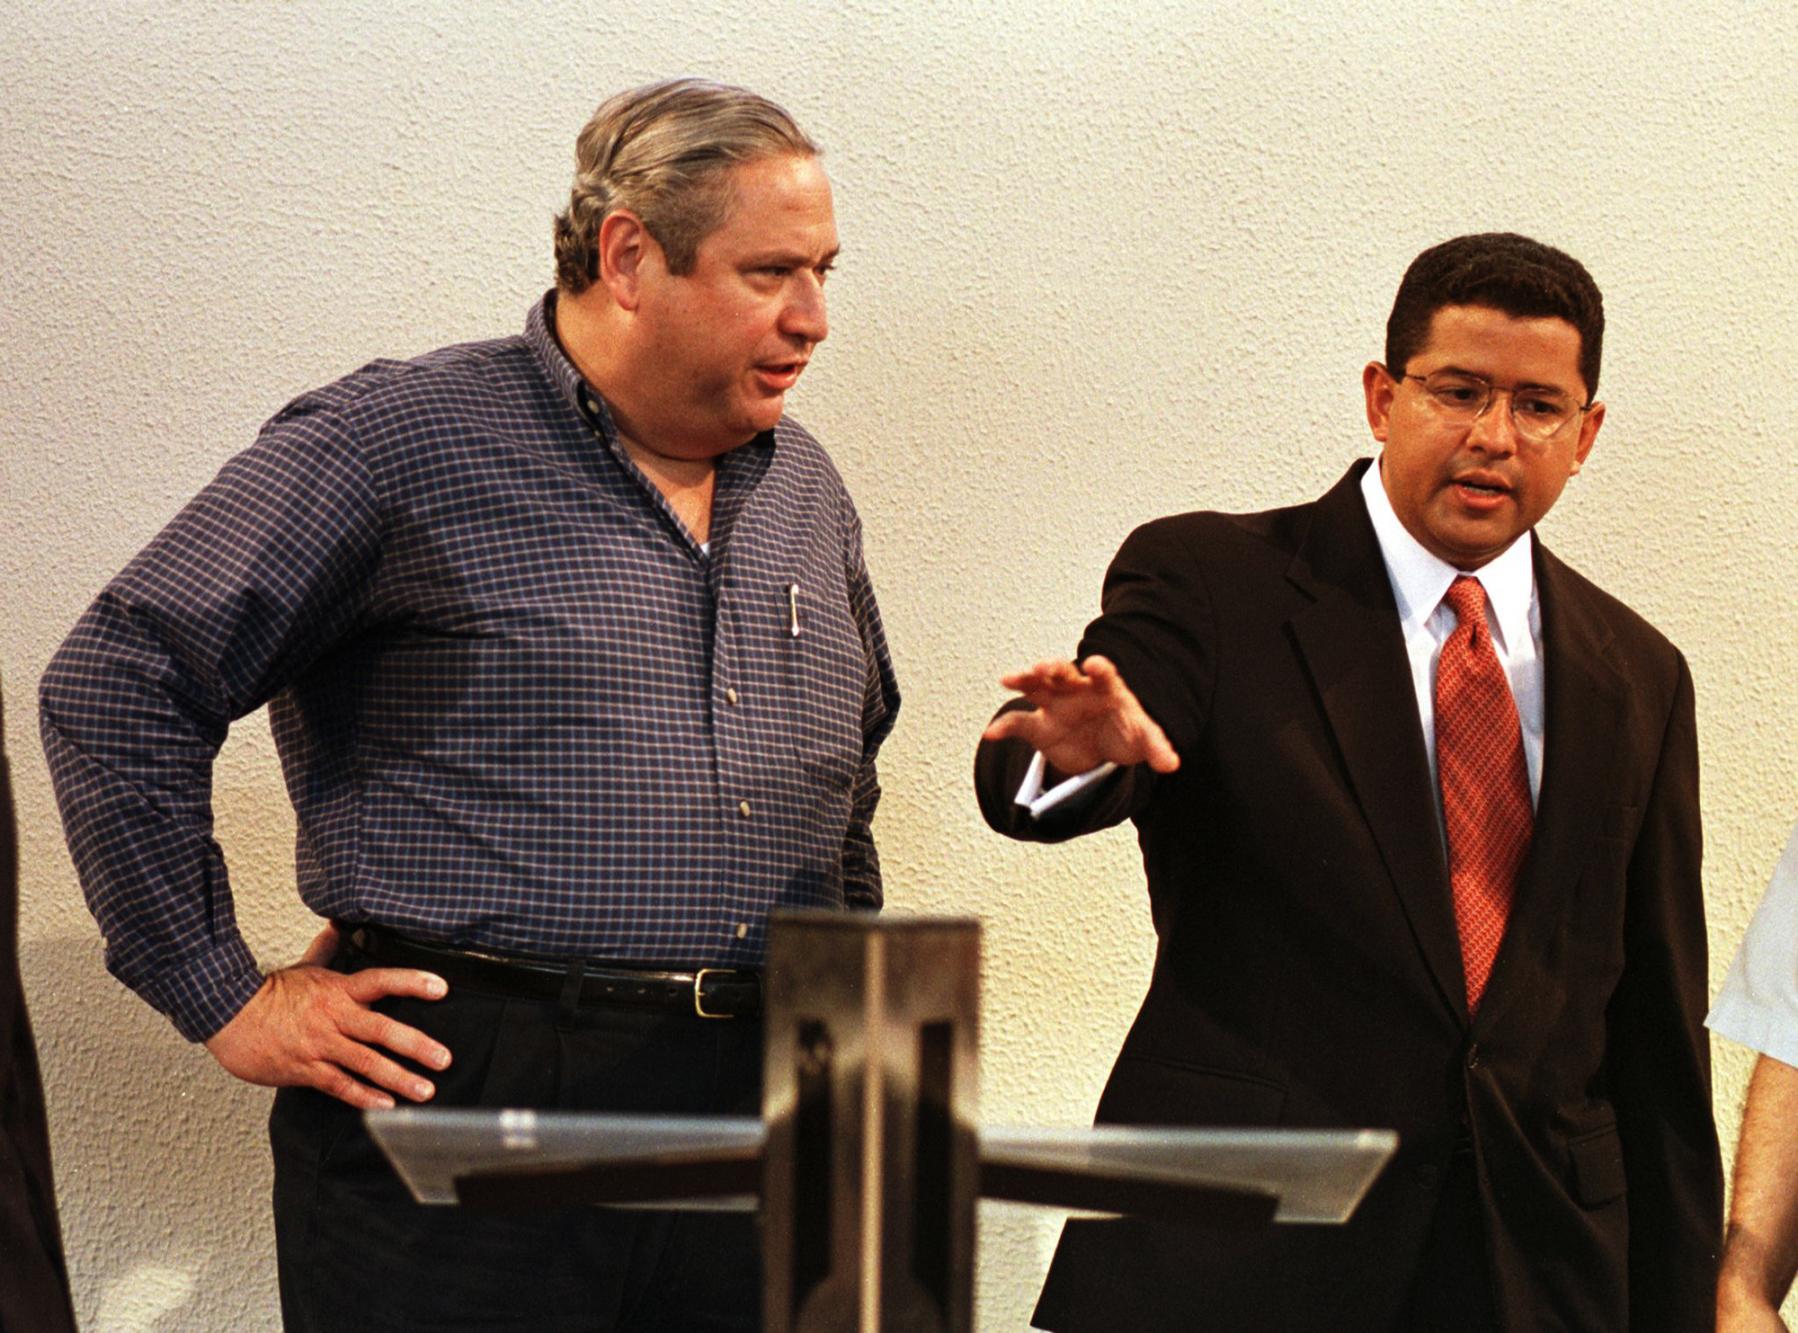 El presidente Armando Calderón Sol (1994-1999) escucha al presidente electo Francisco Flores, el 29 de mayo de 1999, durante un ensayo de la ceremonia de traspaso de mando presidencial. / Foto AFP: Yuri Cortez.